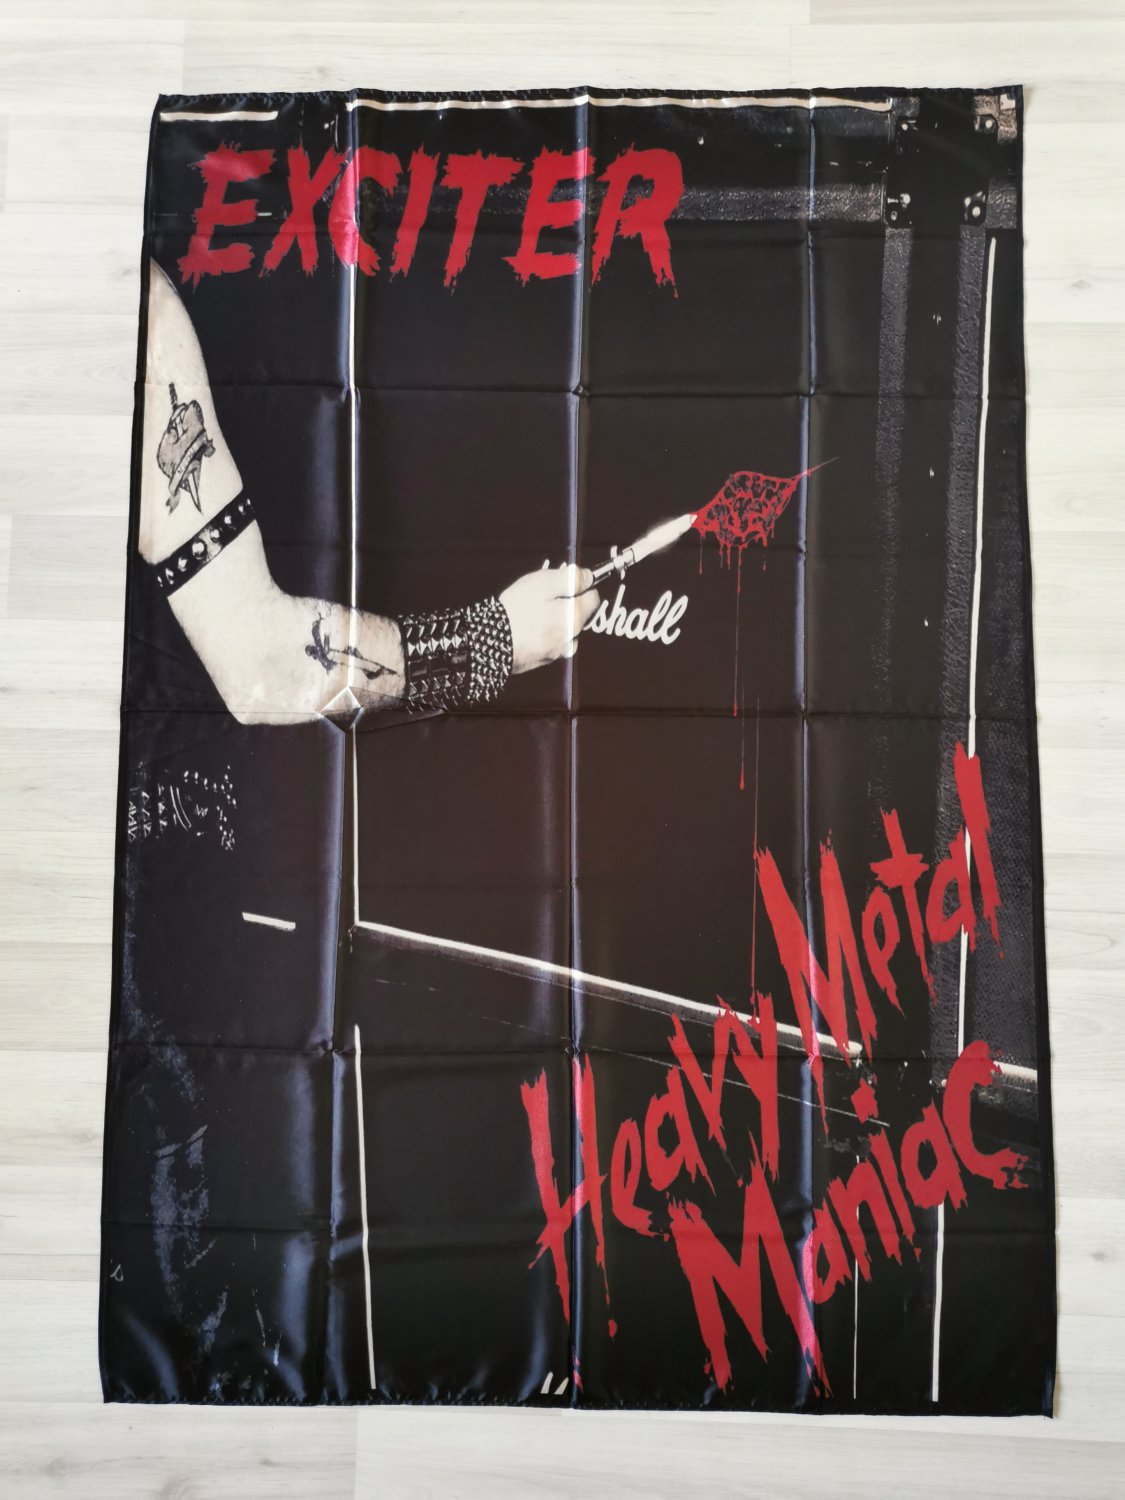 EXCITER - Heavy metal maniac FLAG Thrash metal cloth poster